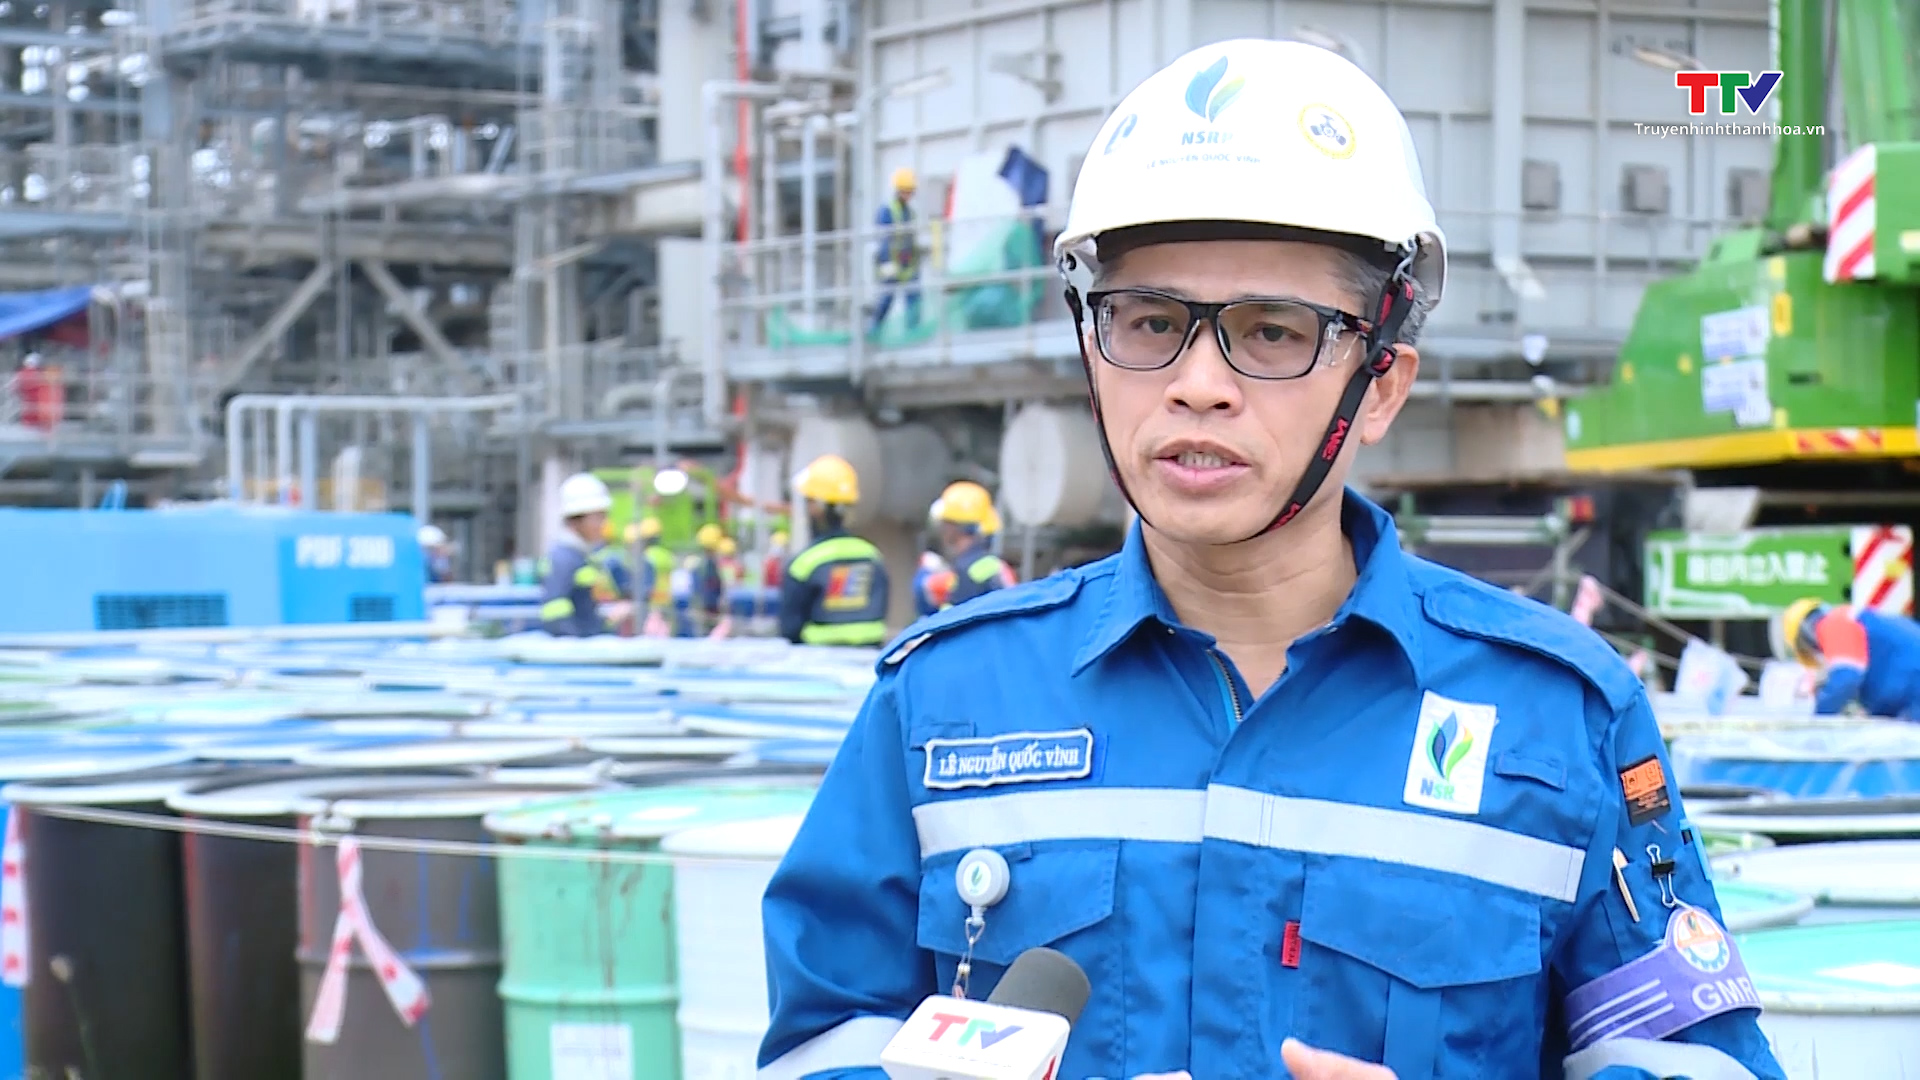 Bảo dưỡng tổng thể Nhà máy Lọc hóa dầu Nghi Sơn đã đạt 52% kế hoạch - Ảnh 7.